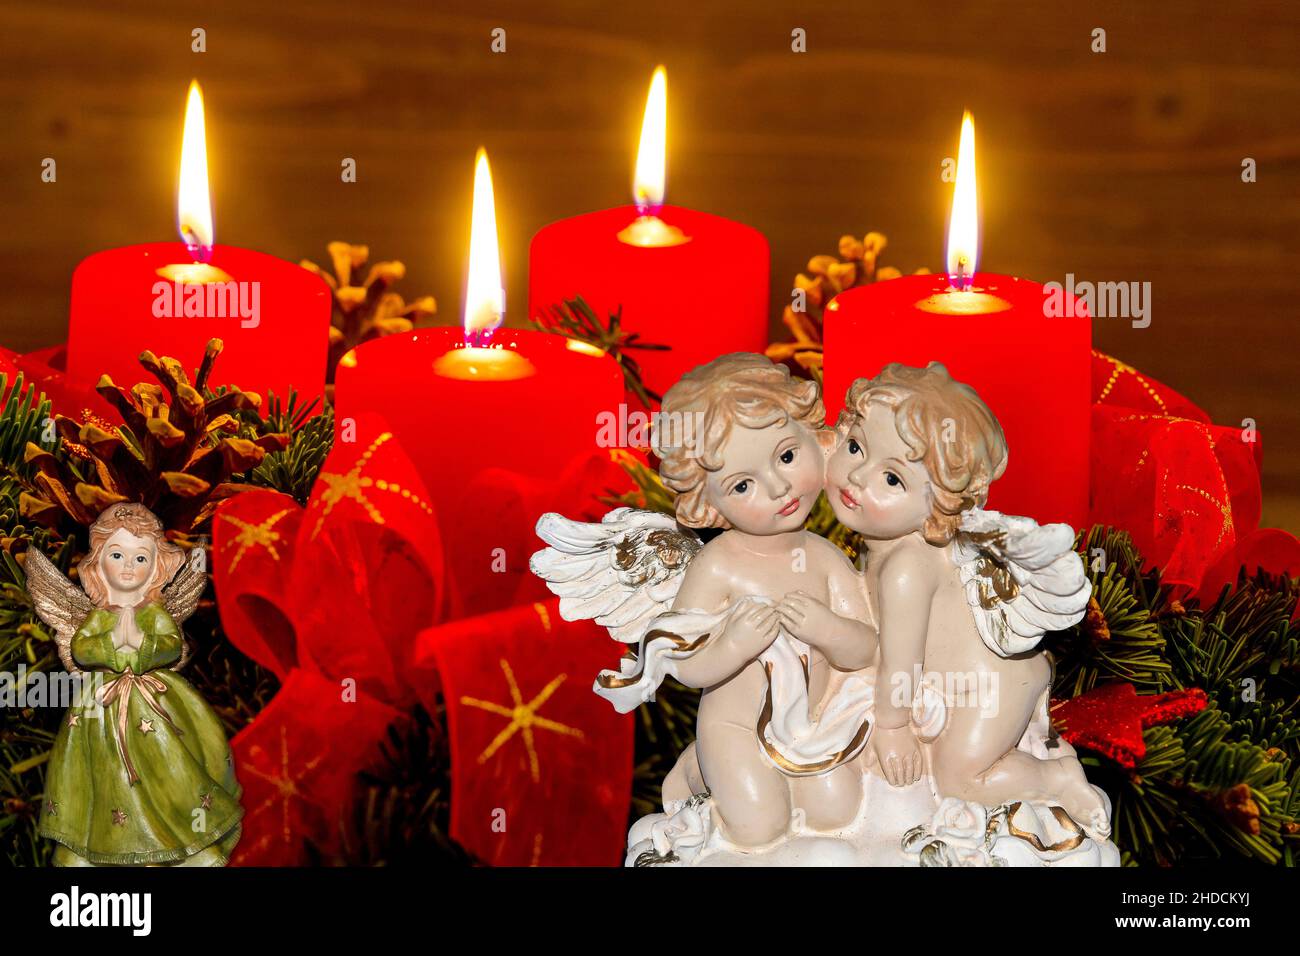 Ein Adventskranz zu Weihnachten sorgt für romatinsche Stimmung in der stillen Advent Zeit. 4 brennende Kerzen, 4. Advent, Engel, weihnachtsengel, Stock Photo